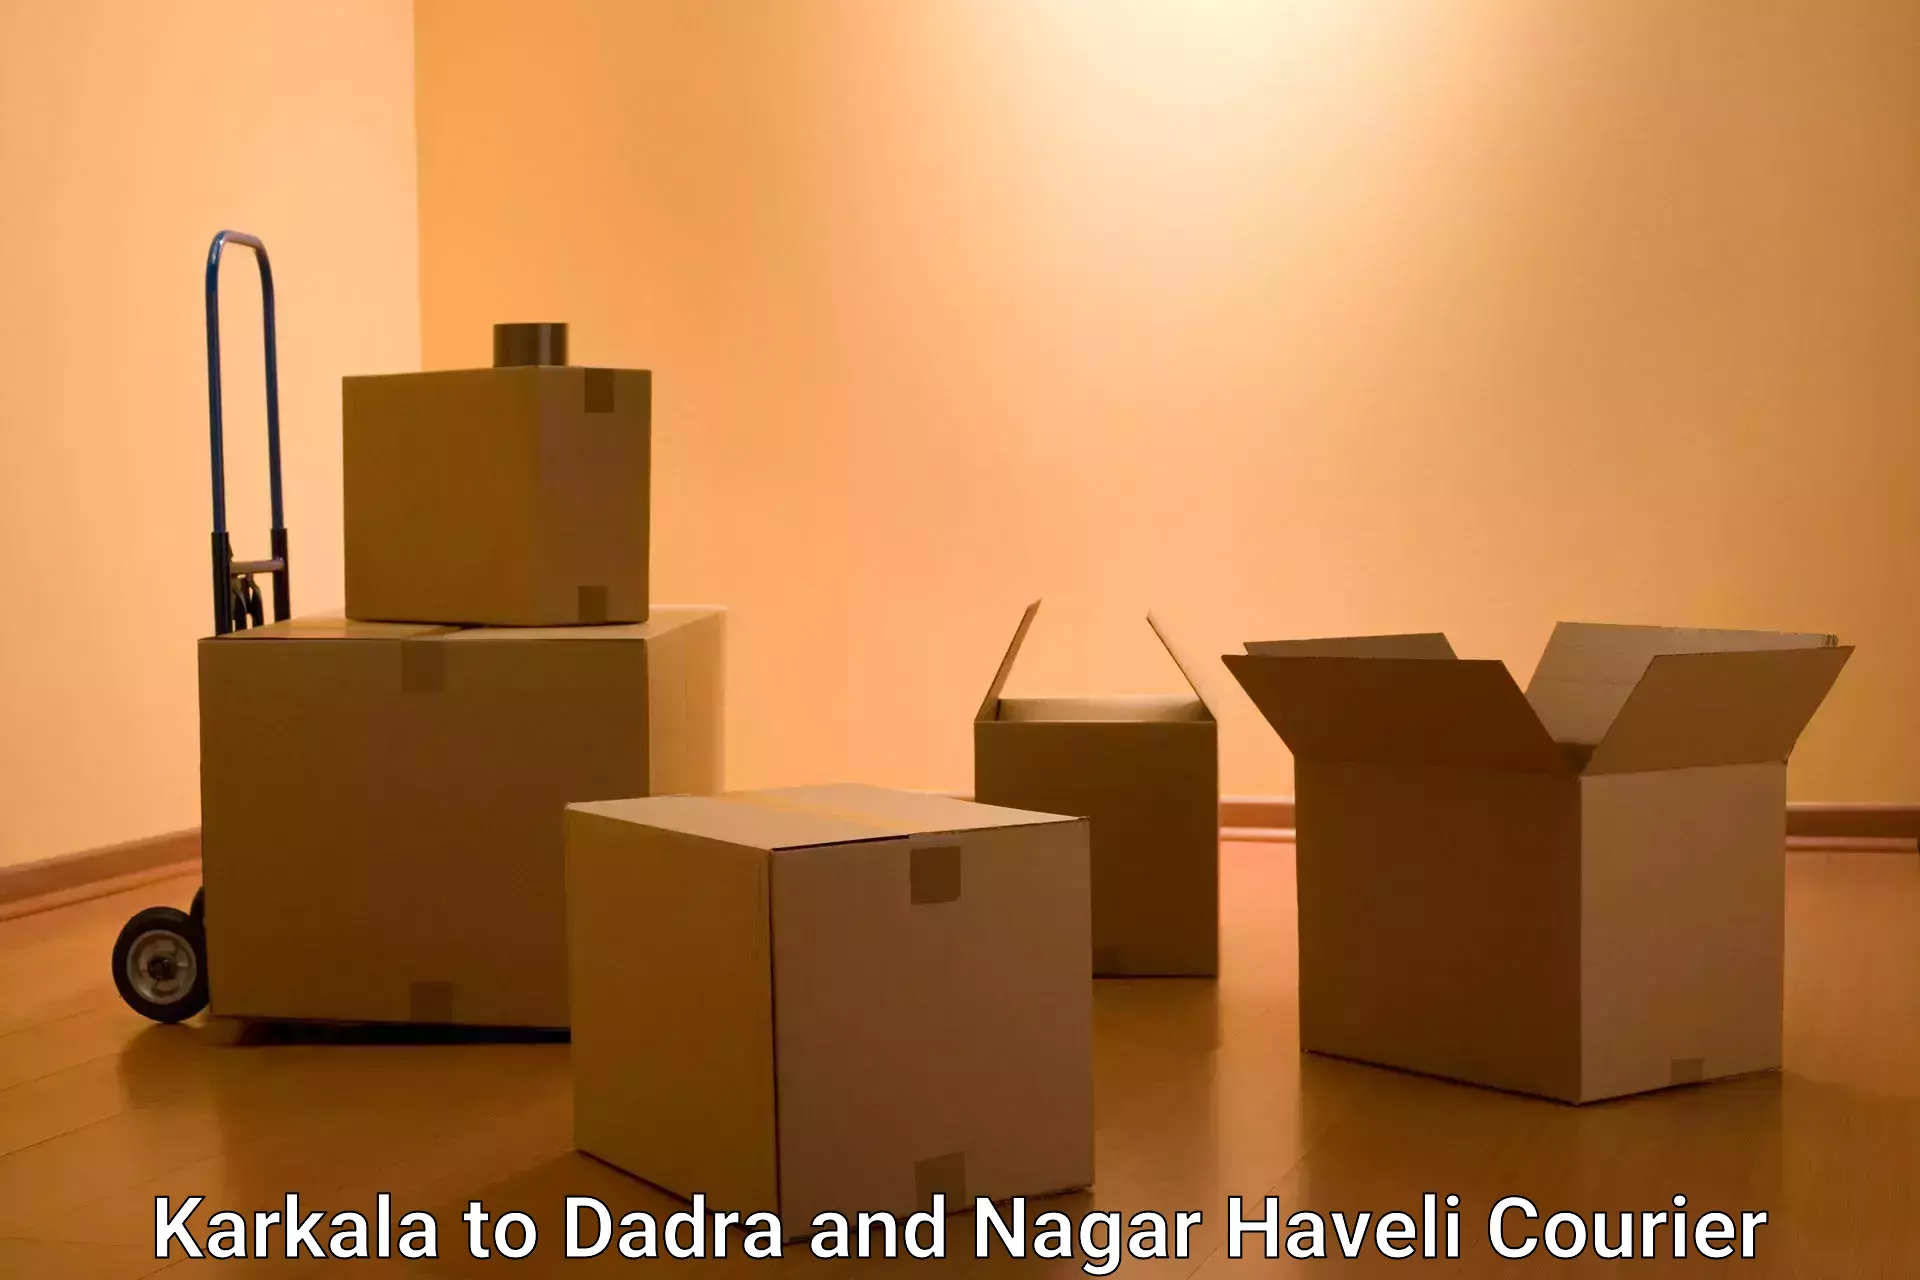 Door-to-door freight service Karkala to Dadra and Nagar Haveli